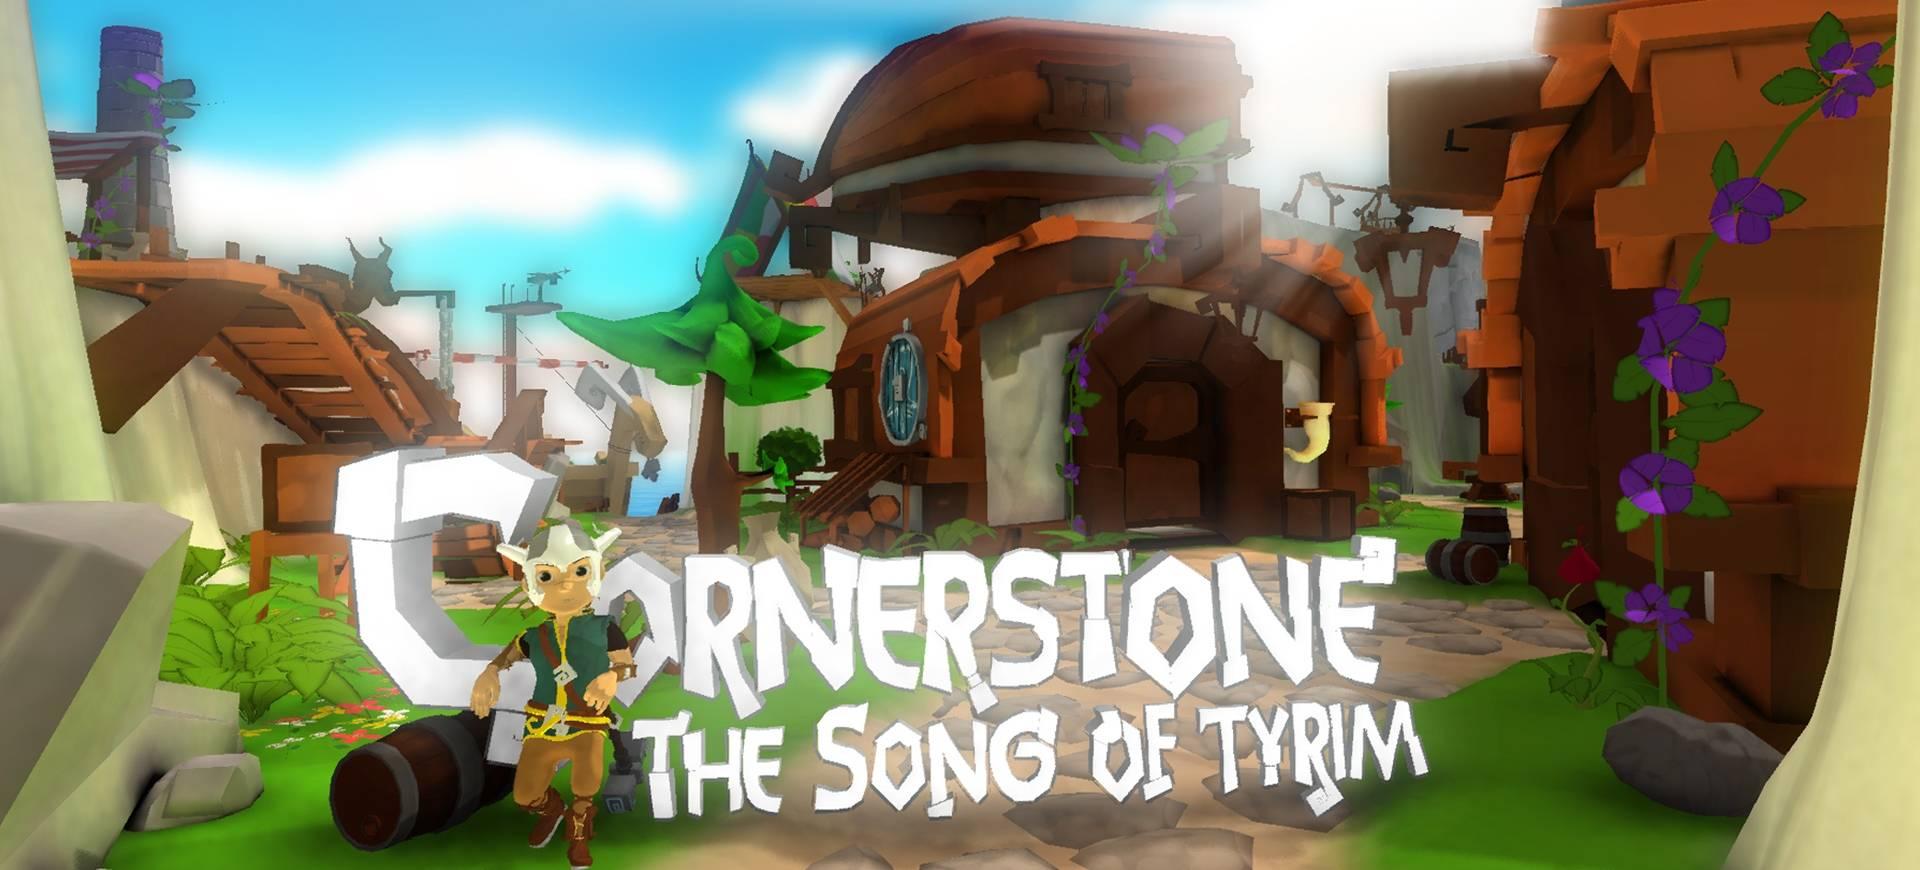 Cornerstone: The Song Of Tyrim - Viking Thần Truyện - Trải Nghiệm Game